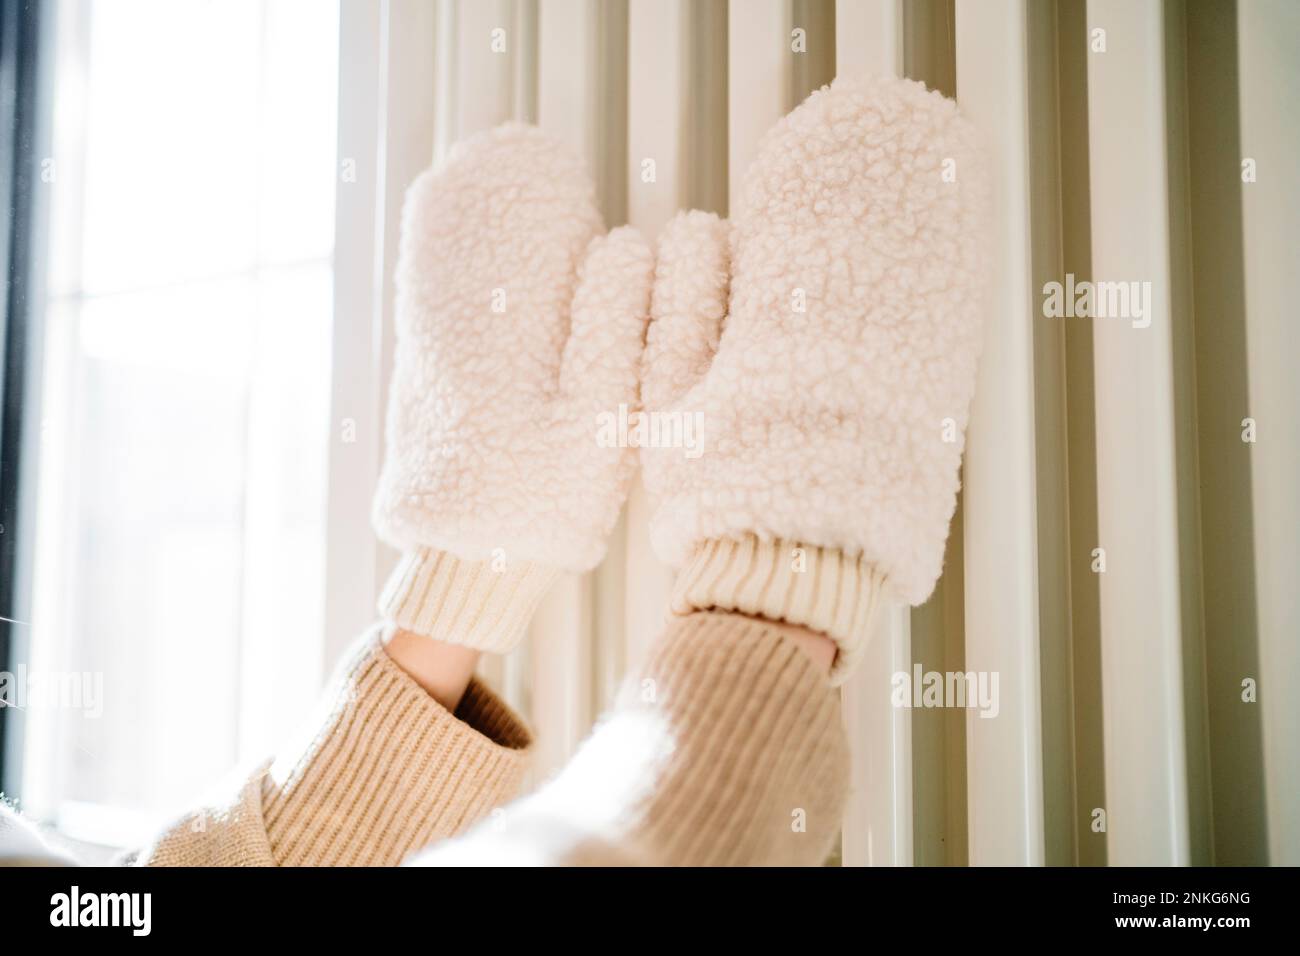 Mani di ragazza adolescente con i mitens che toccano sul riscaldatore del radiatore Foto Stock